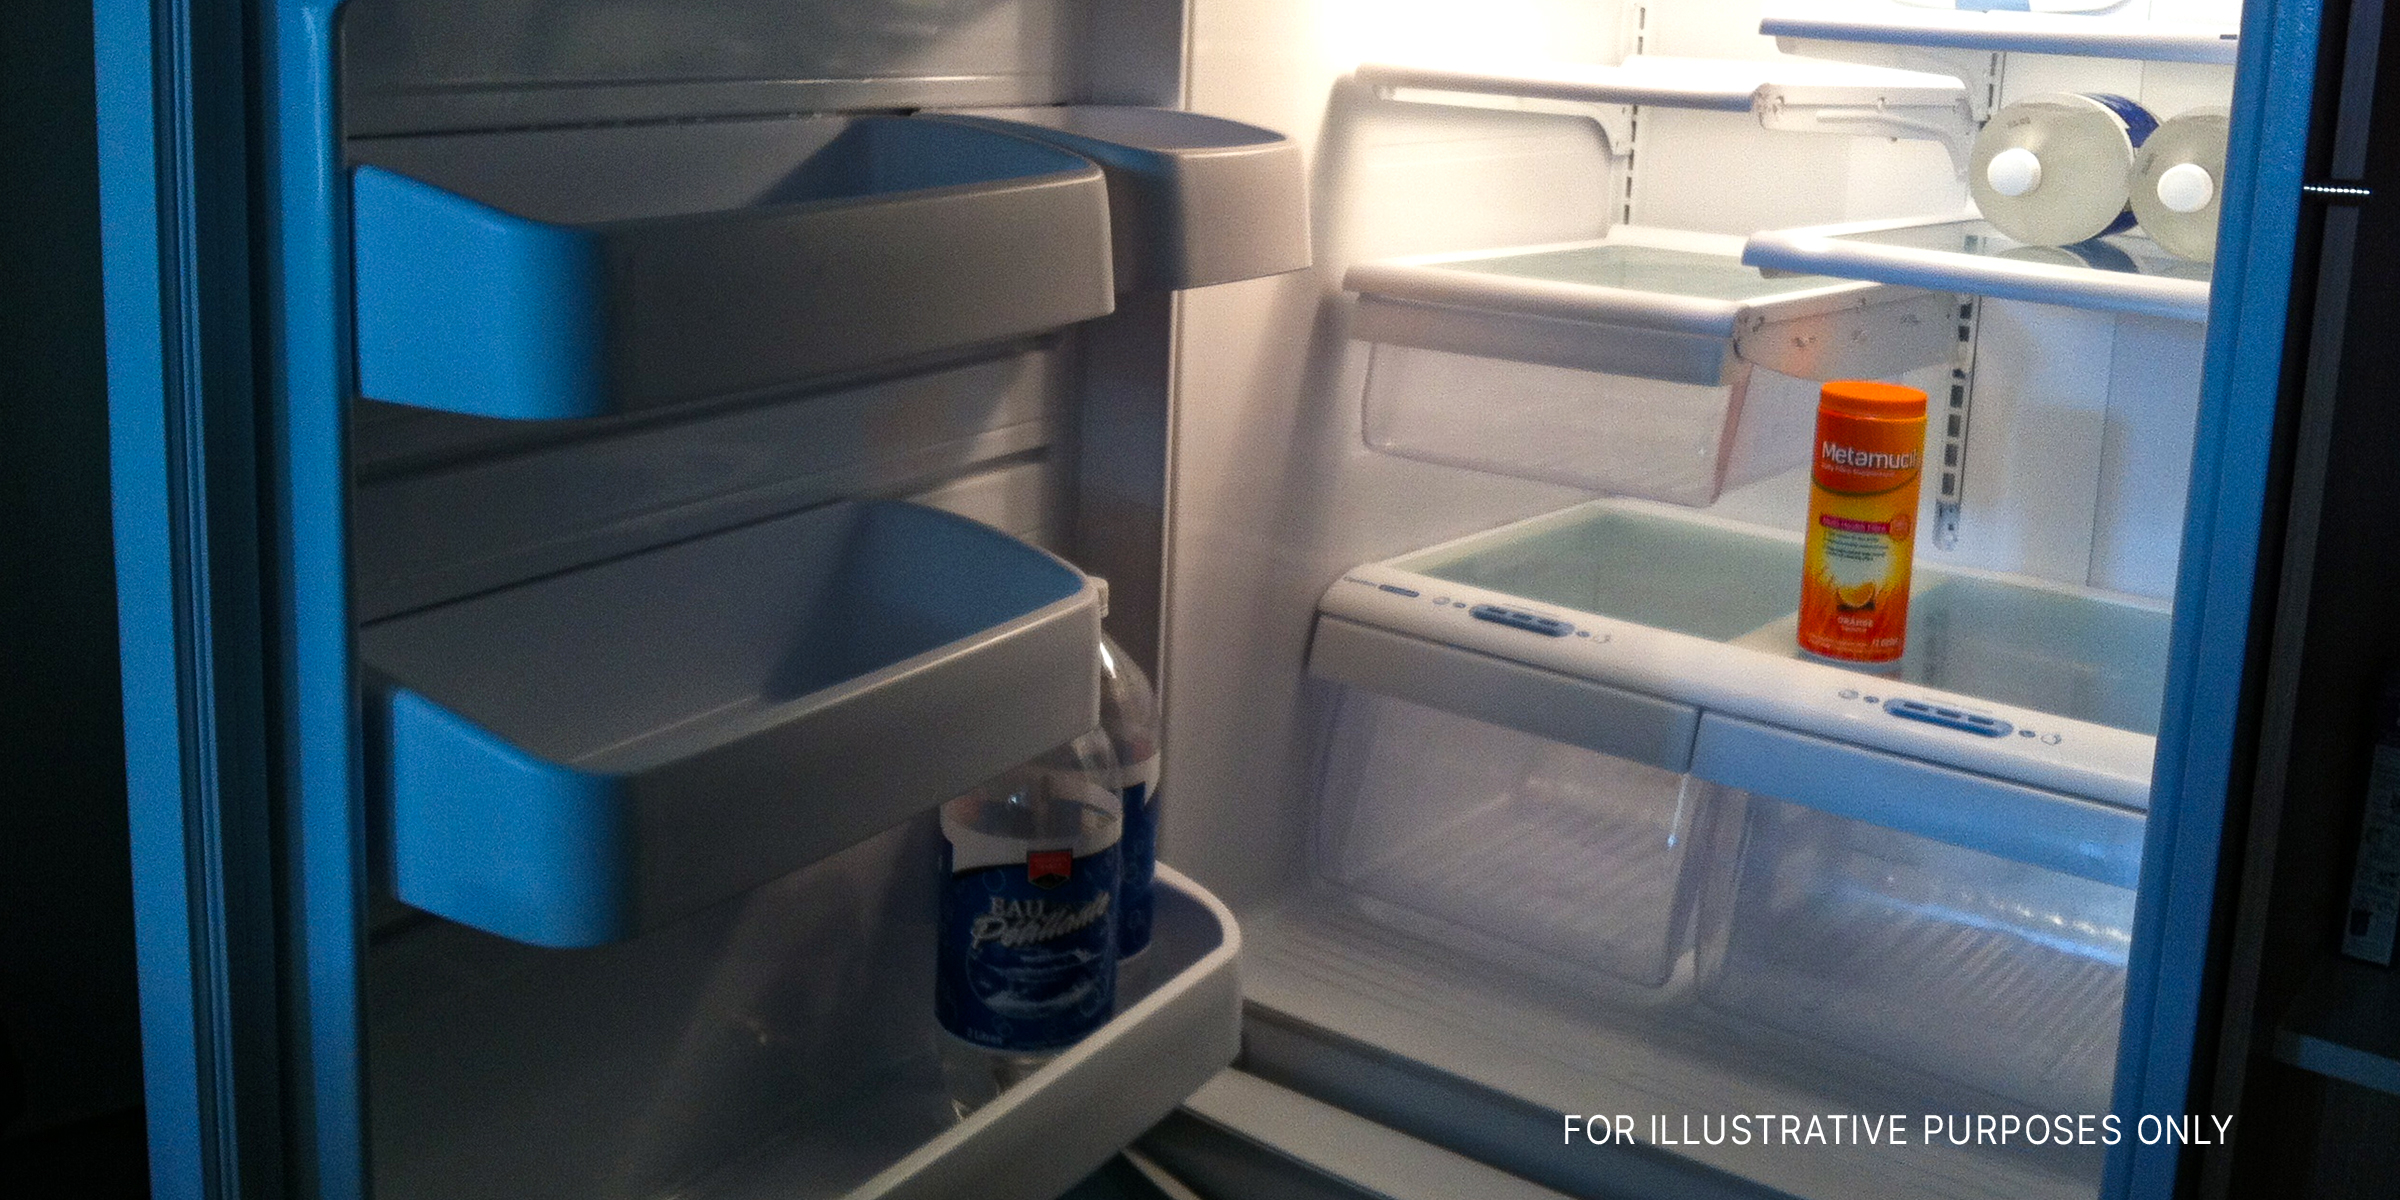 An empty fridge | Source: Flicker